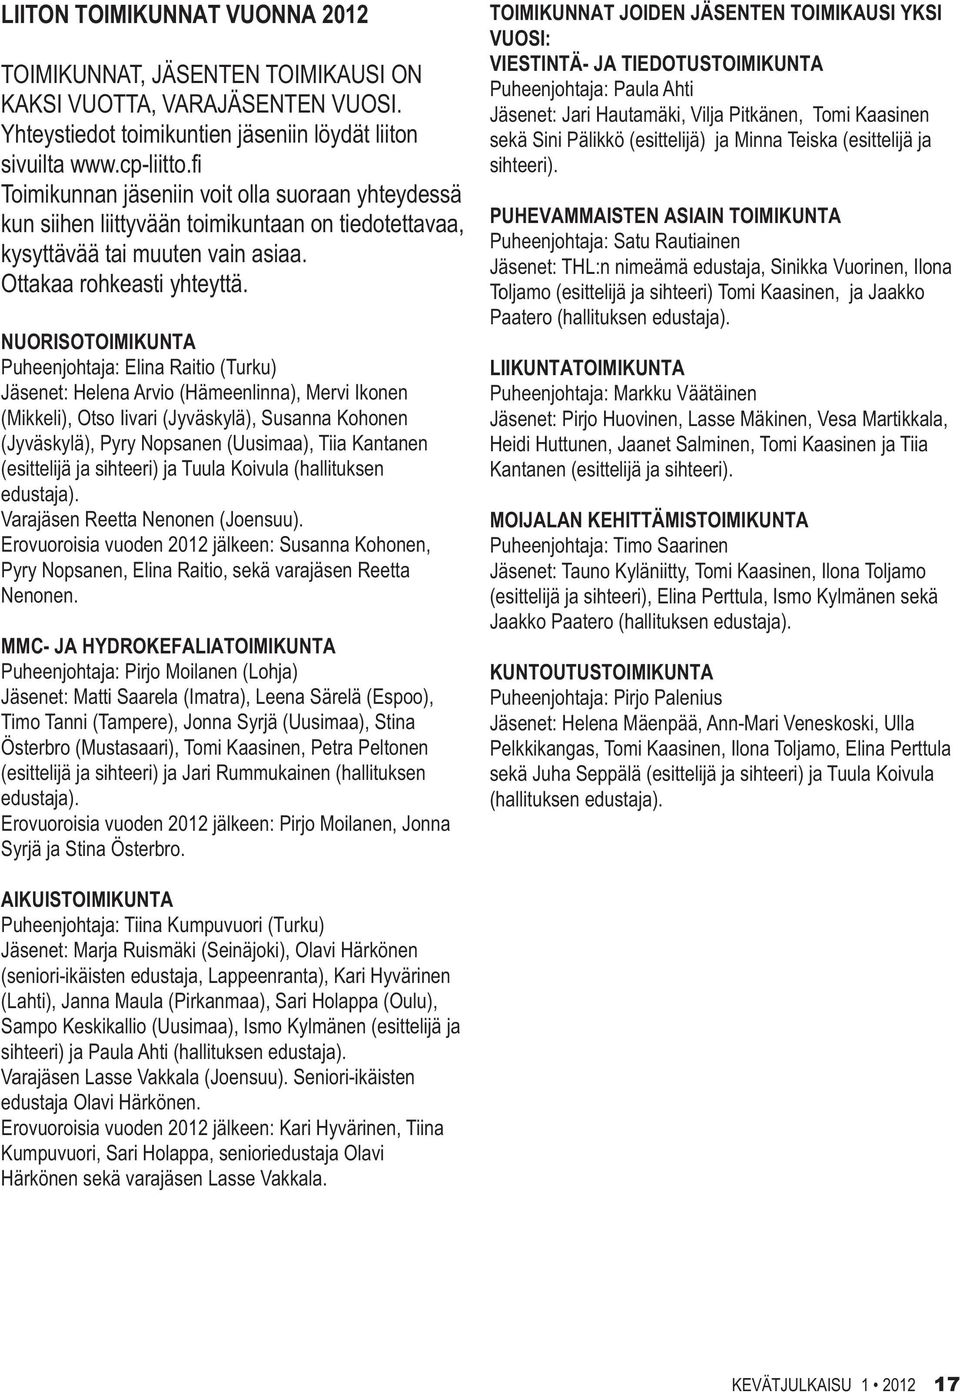 NUORISOTOIMIKUNTA Puheenjohtaja: Elina Raitio (Turku) Jäsenet: Helena Arvio (Hämeenlinna), Mervi Ikonen (Mikkeli), Otso Iivari (Jyväskylä), Susanna Kohonen (Jyväskylä), Pyry Nopsanen (Uusimaa), Tiia